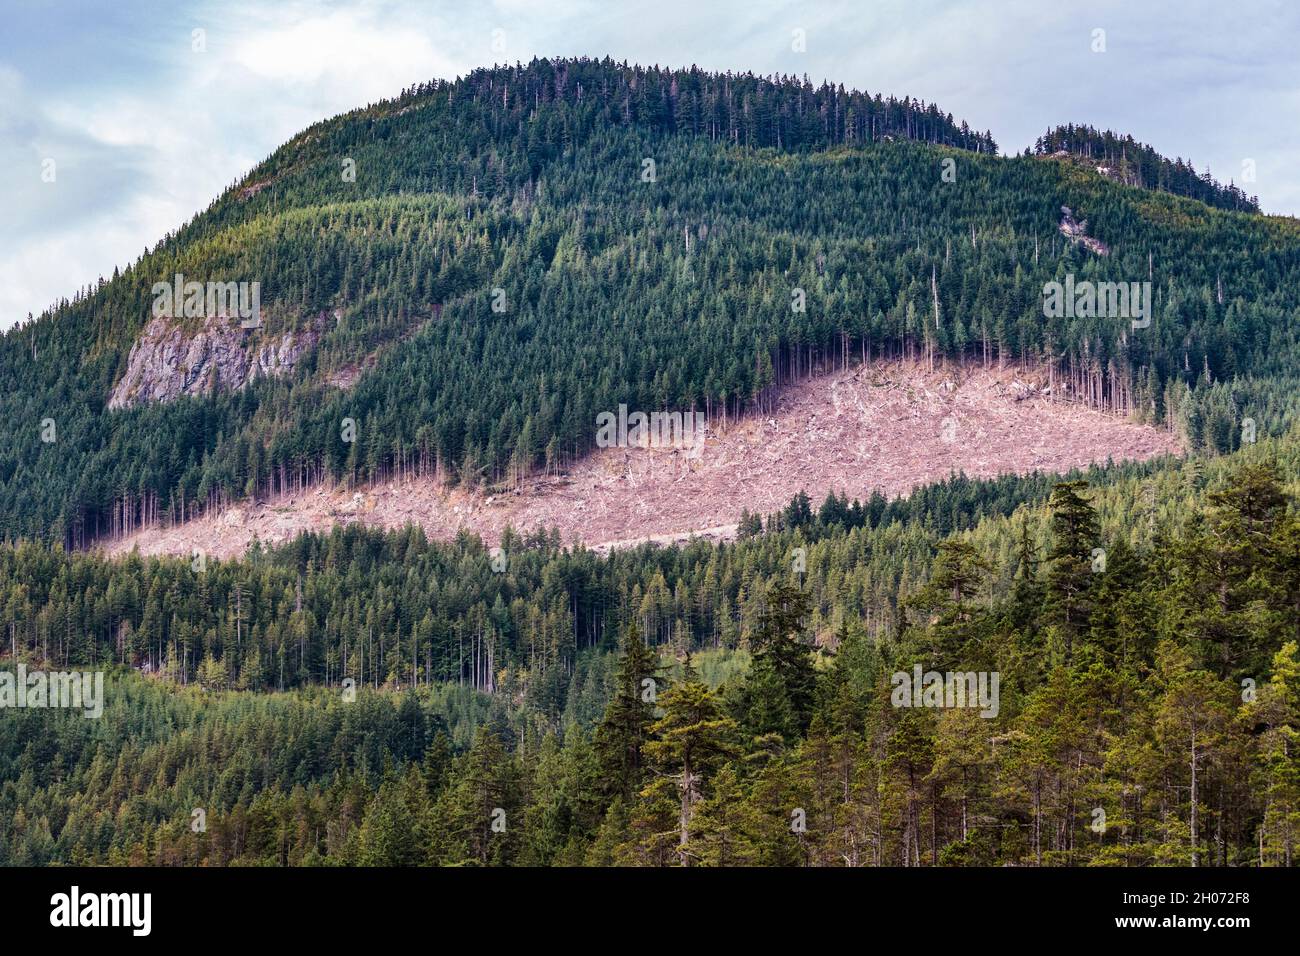 Une parcelle de forêt située sur le flanc d'une montagne dans la côte de la Colombie-Britannique a été découpée à blanc, avec une route forestière juste visible à la base de la zone forestière. Banque D'Images